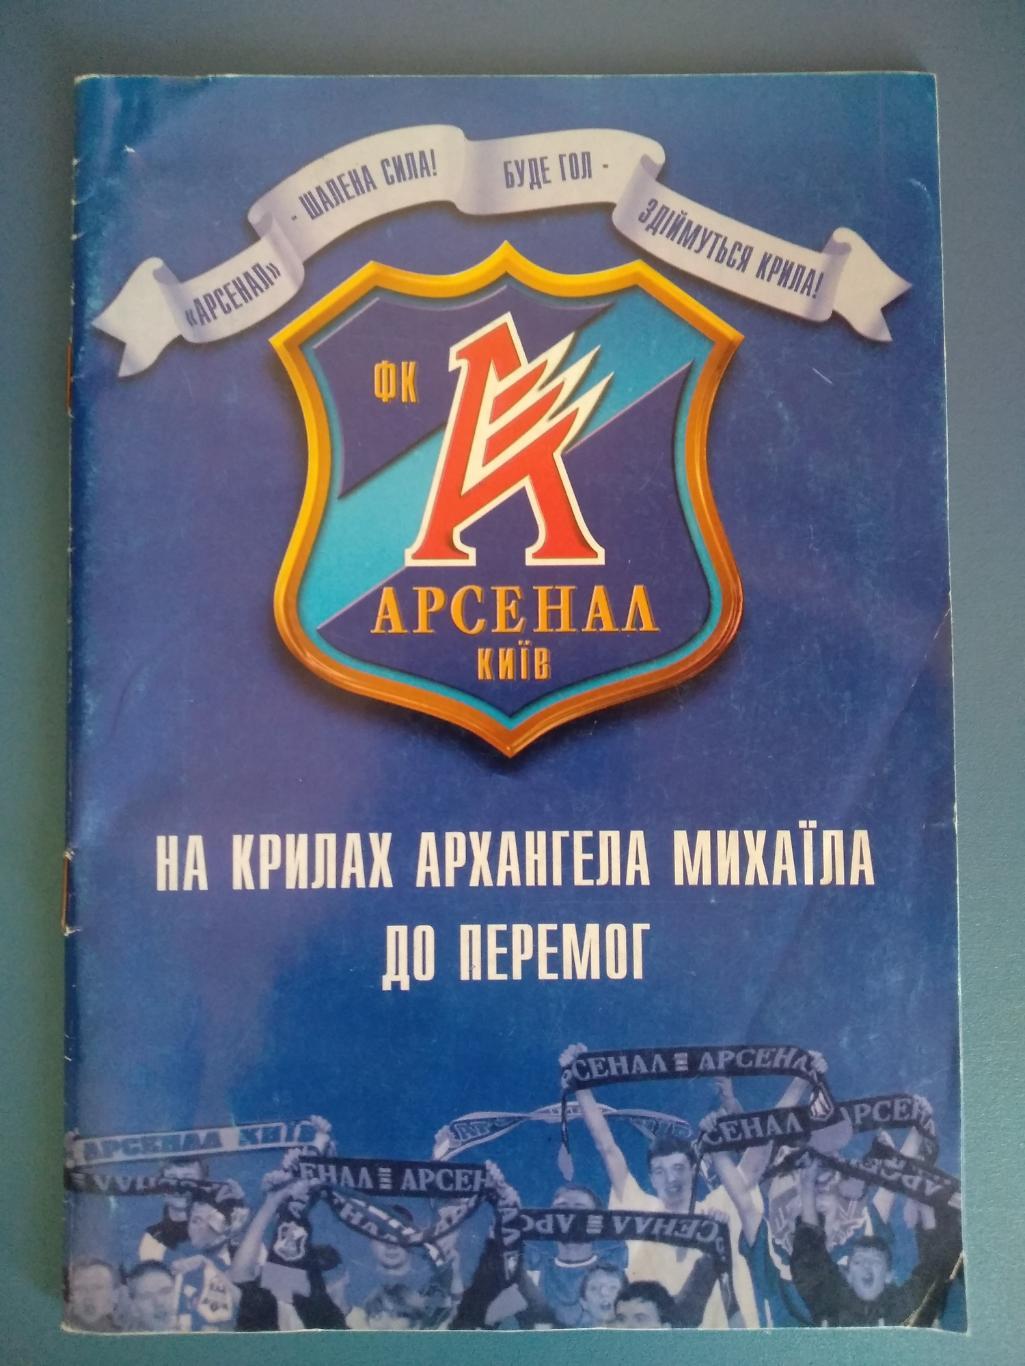 Буклет: Арсенал Киев 2003/2004. Официальное клубное издание киевского Арсенала